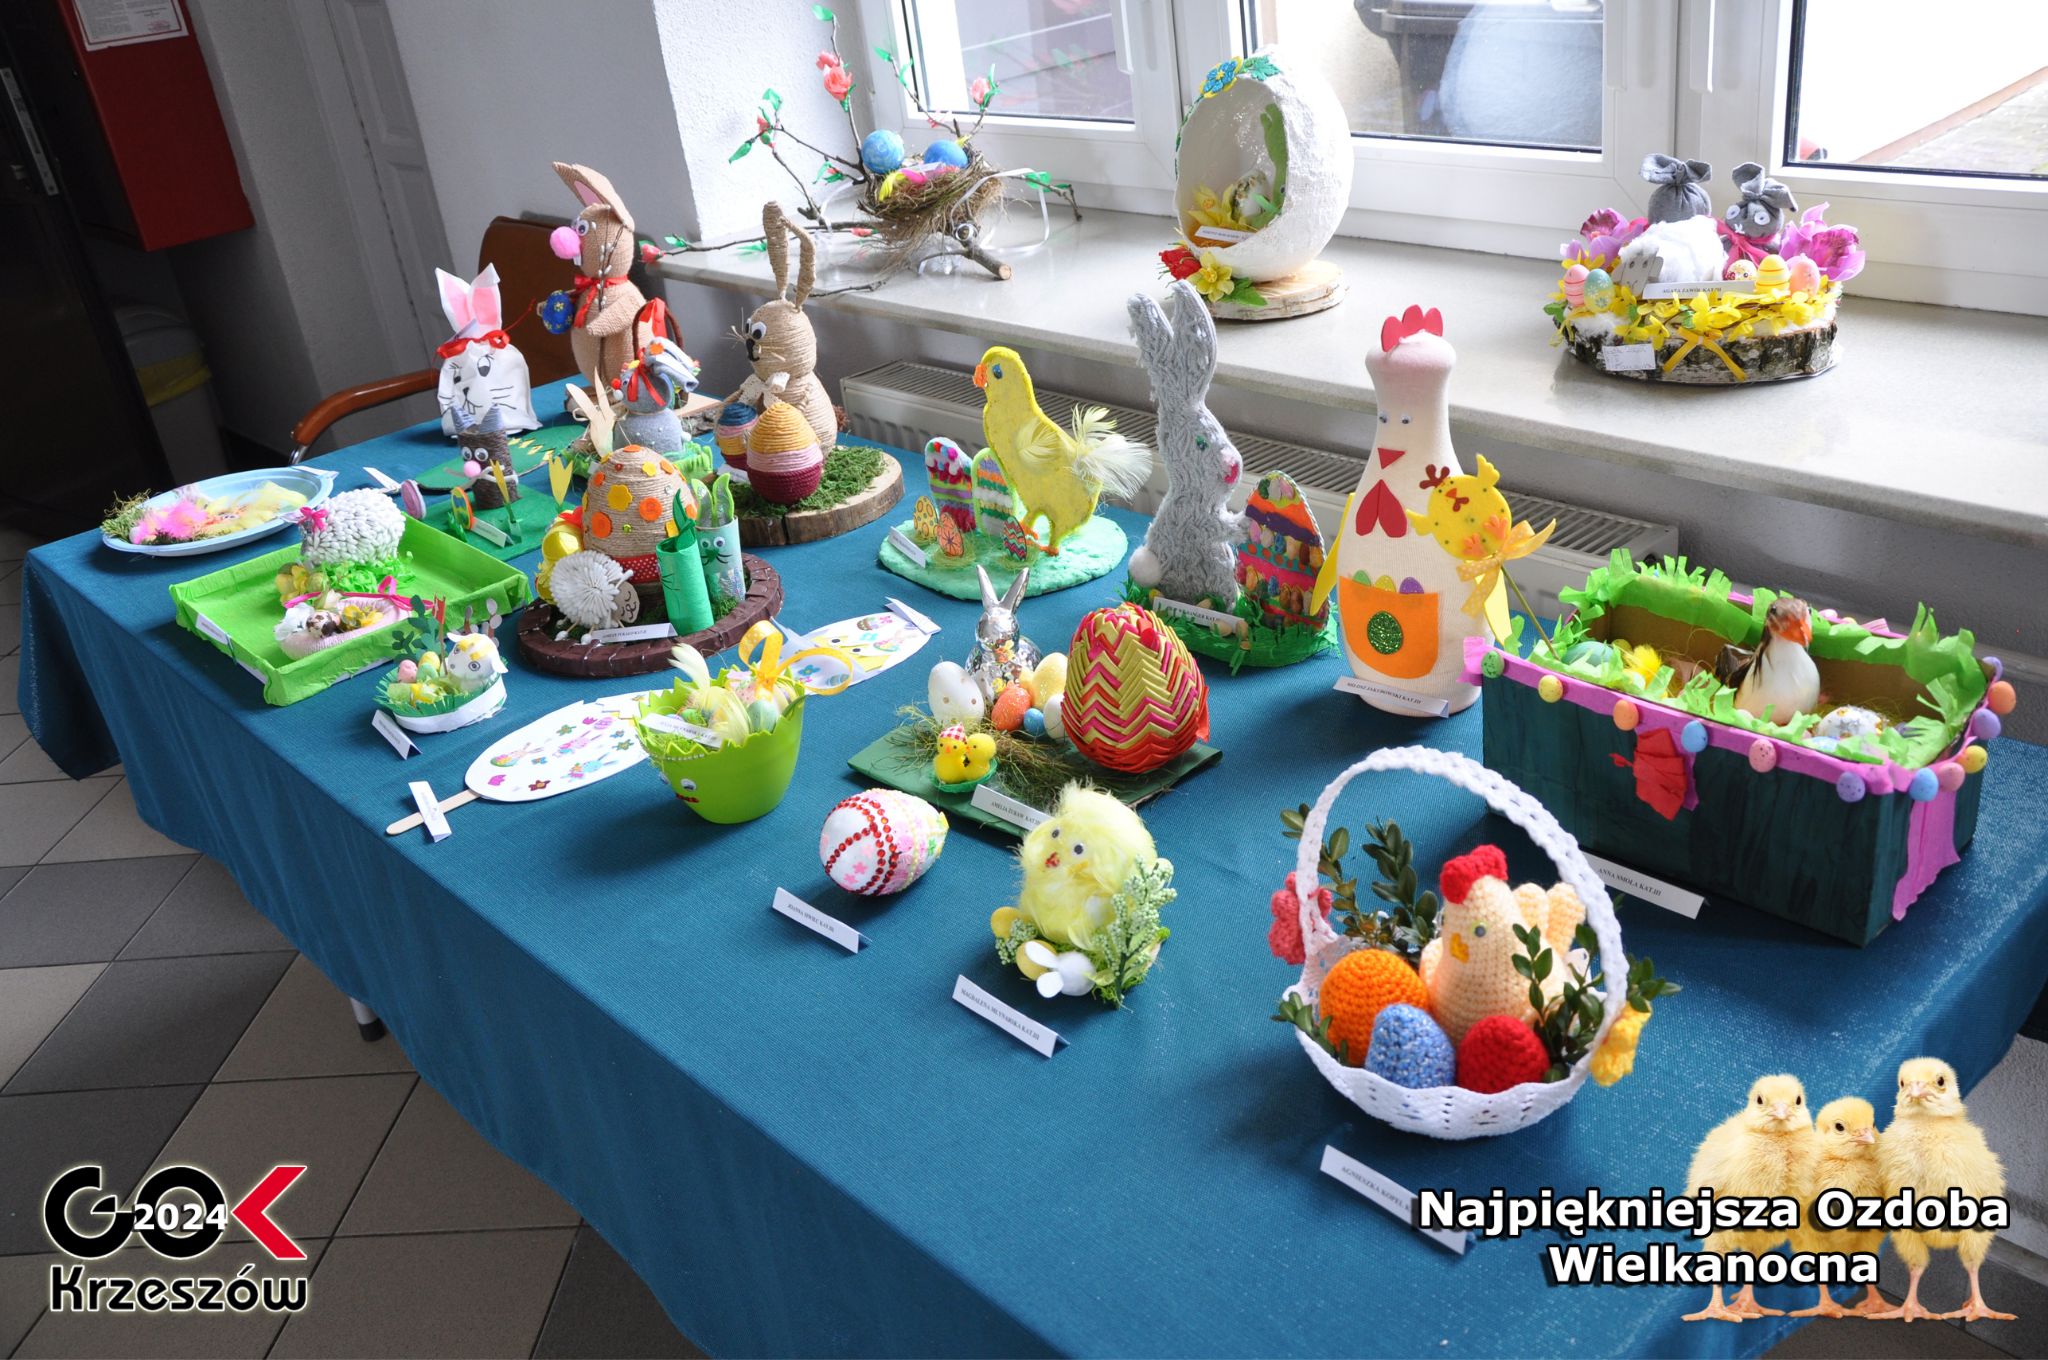 Galeria prac uczestników konkursu na Najpiękniejszą Ozdobę Wielkanocną